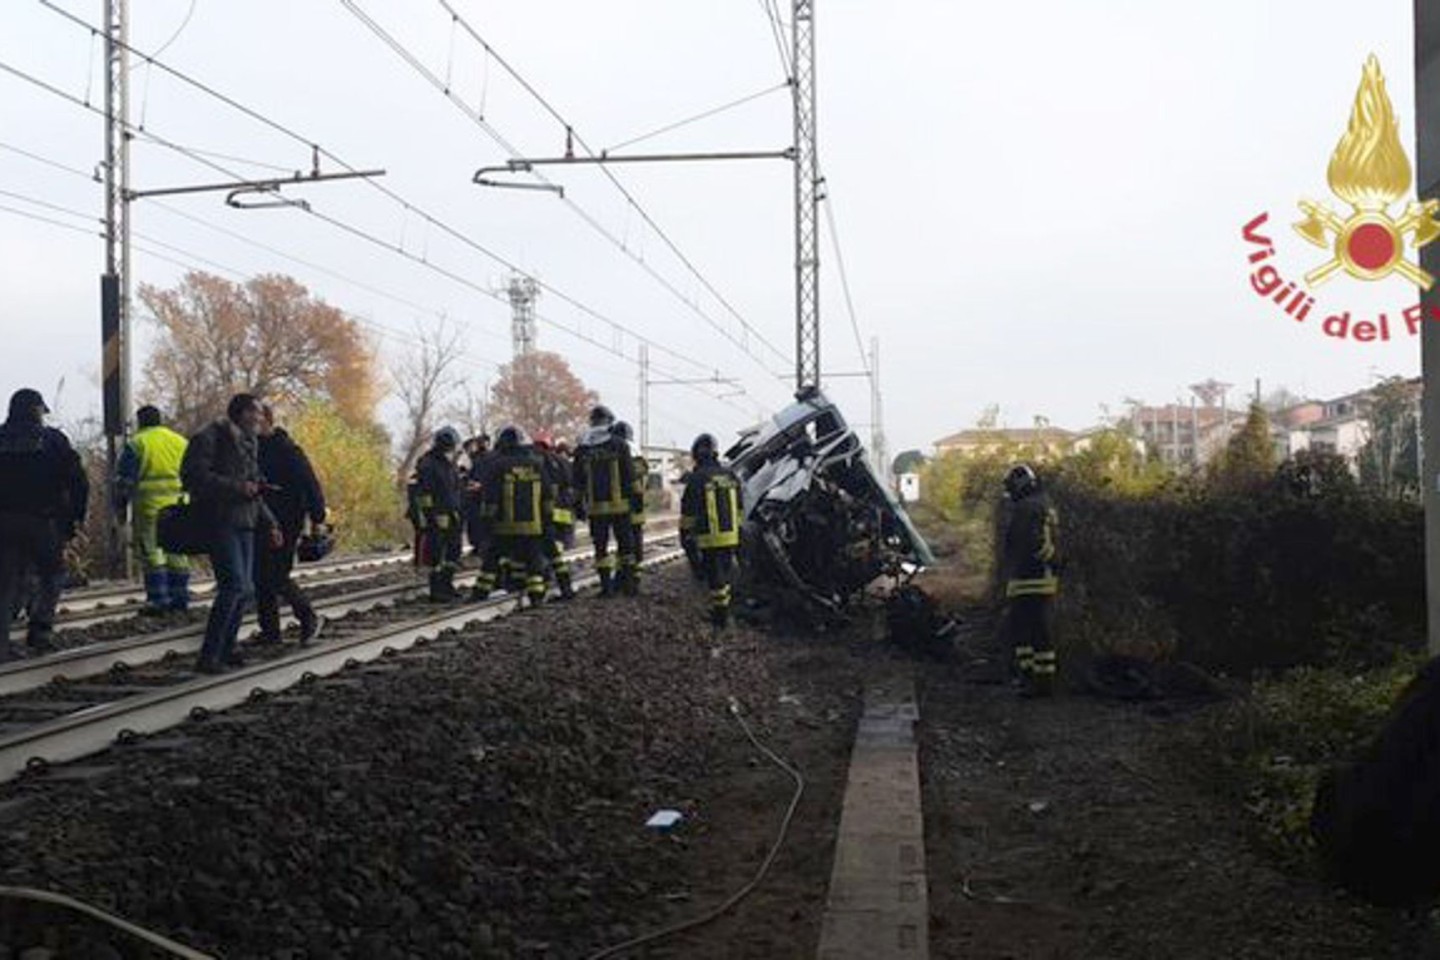 Handout der italienischen Feuerwehr zeigt einen Blick auf die Unfallstelle. Ein Kleinbus war von der Fahrbahn abgekommen, auf Bahngleise geraten und von einem Zug erfasst worden.